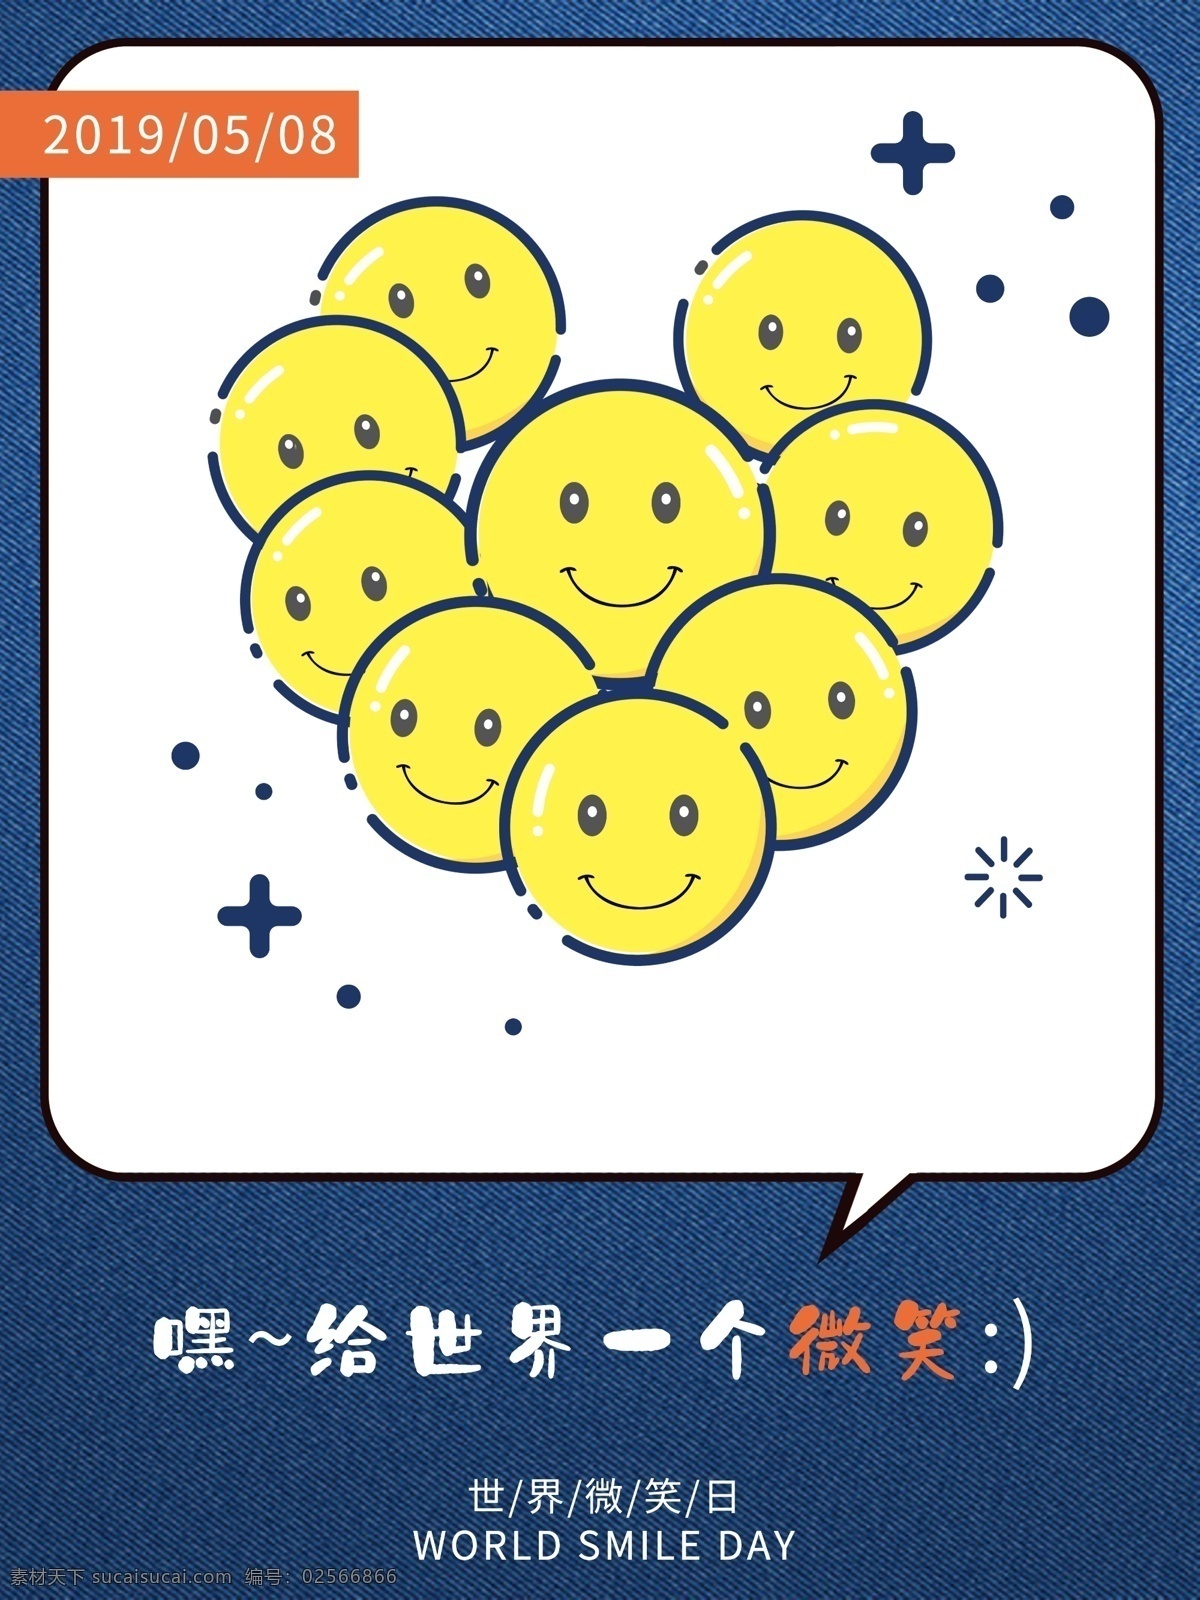 原创 手绘 风 微笑 日 海报 世界微笑日 emoji 表情 笑脸 手绘风 原创海报 简约